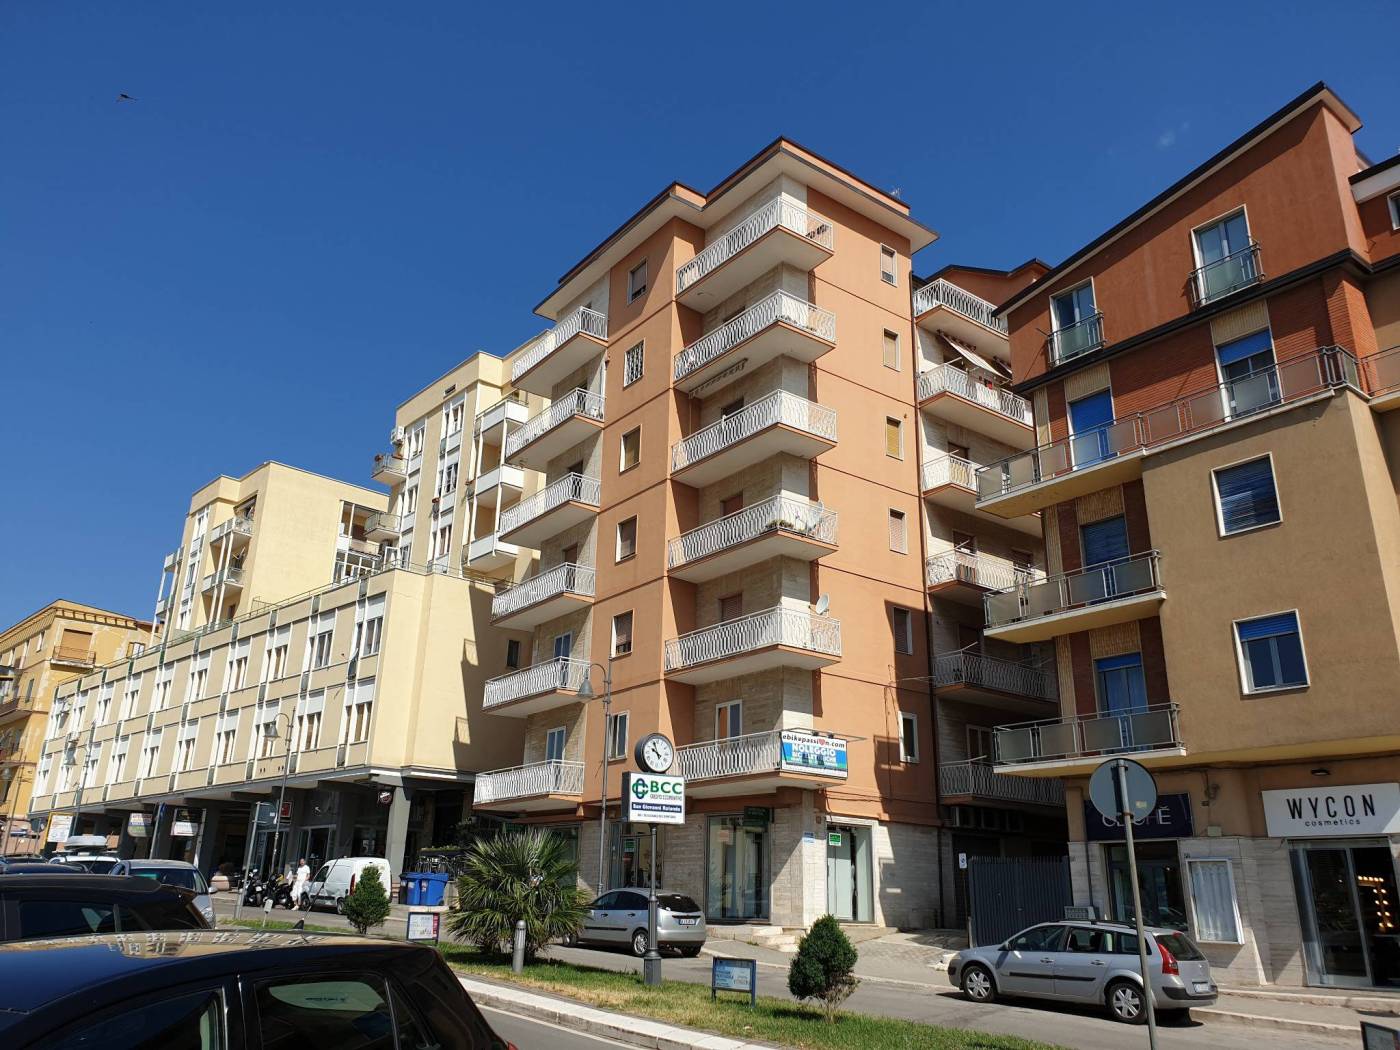 Vendita Appartamento San Giovanni Rotondo. Trilocale in piazza Europa 84.  Ottimo stato, sesto piano, con balcone, riscaldamento centralizzato, rif.  74699694